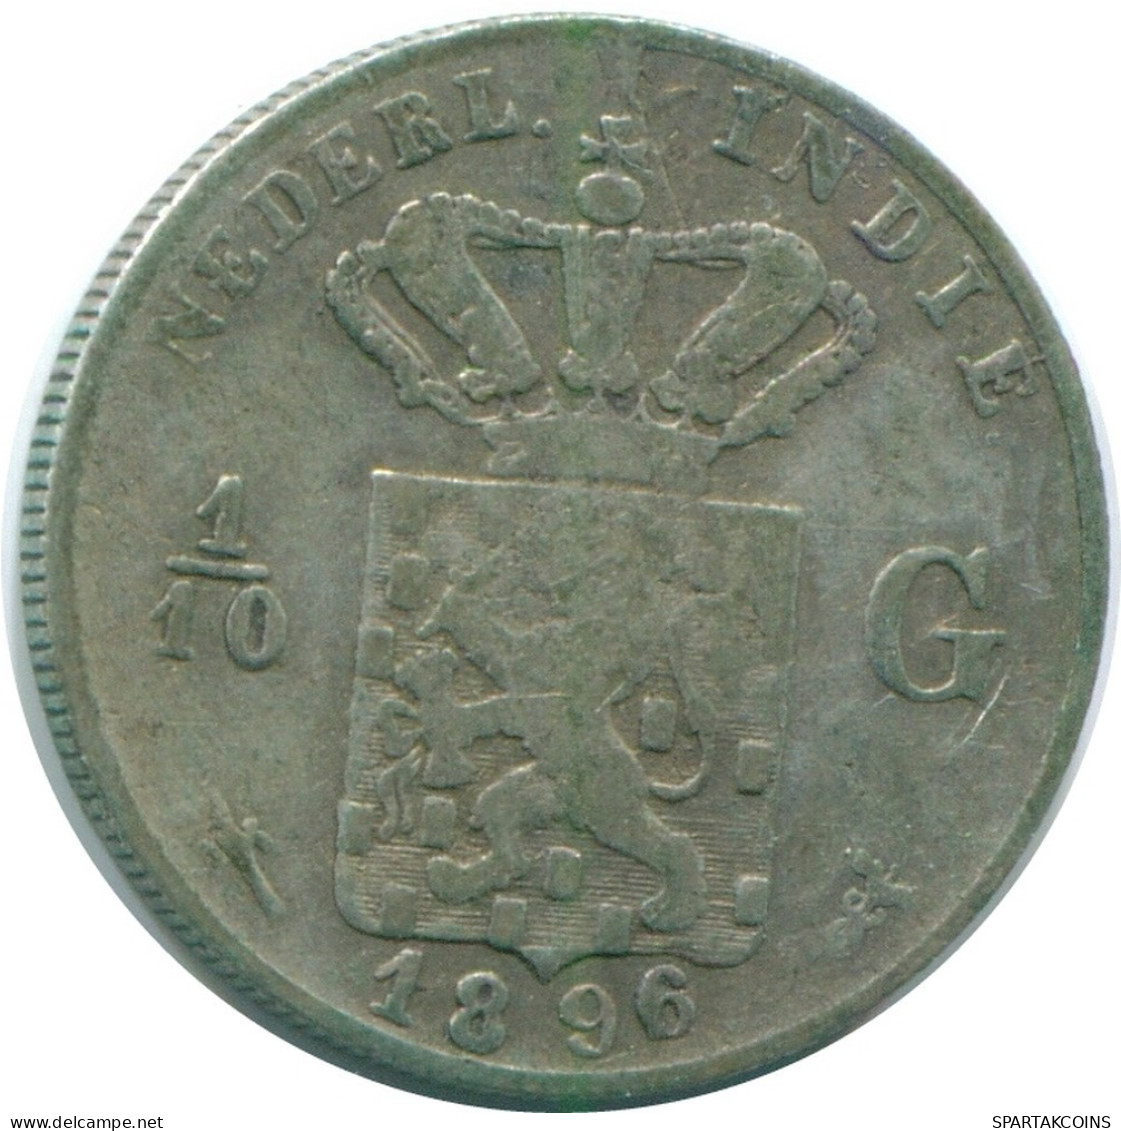 1/10 GULDEN 1896 INDIAS ORIENTALES DE LOS PAÍSES BAJOS PLATA #NL13199.3.E.A - Indie Olandesi